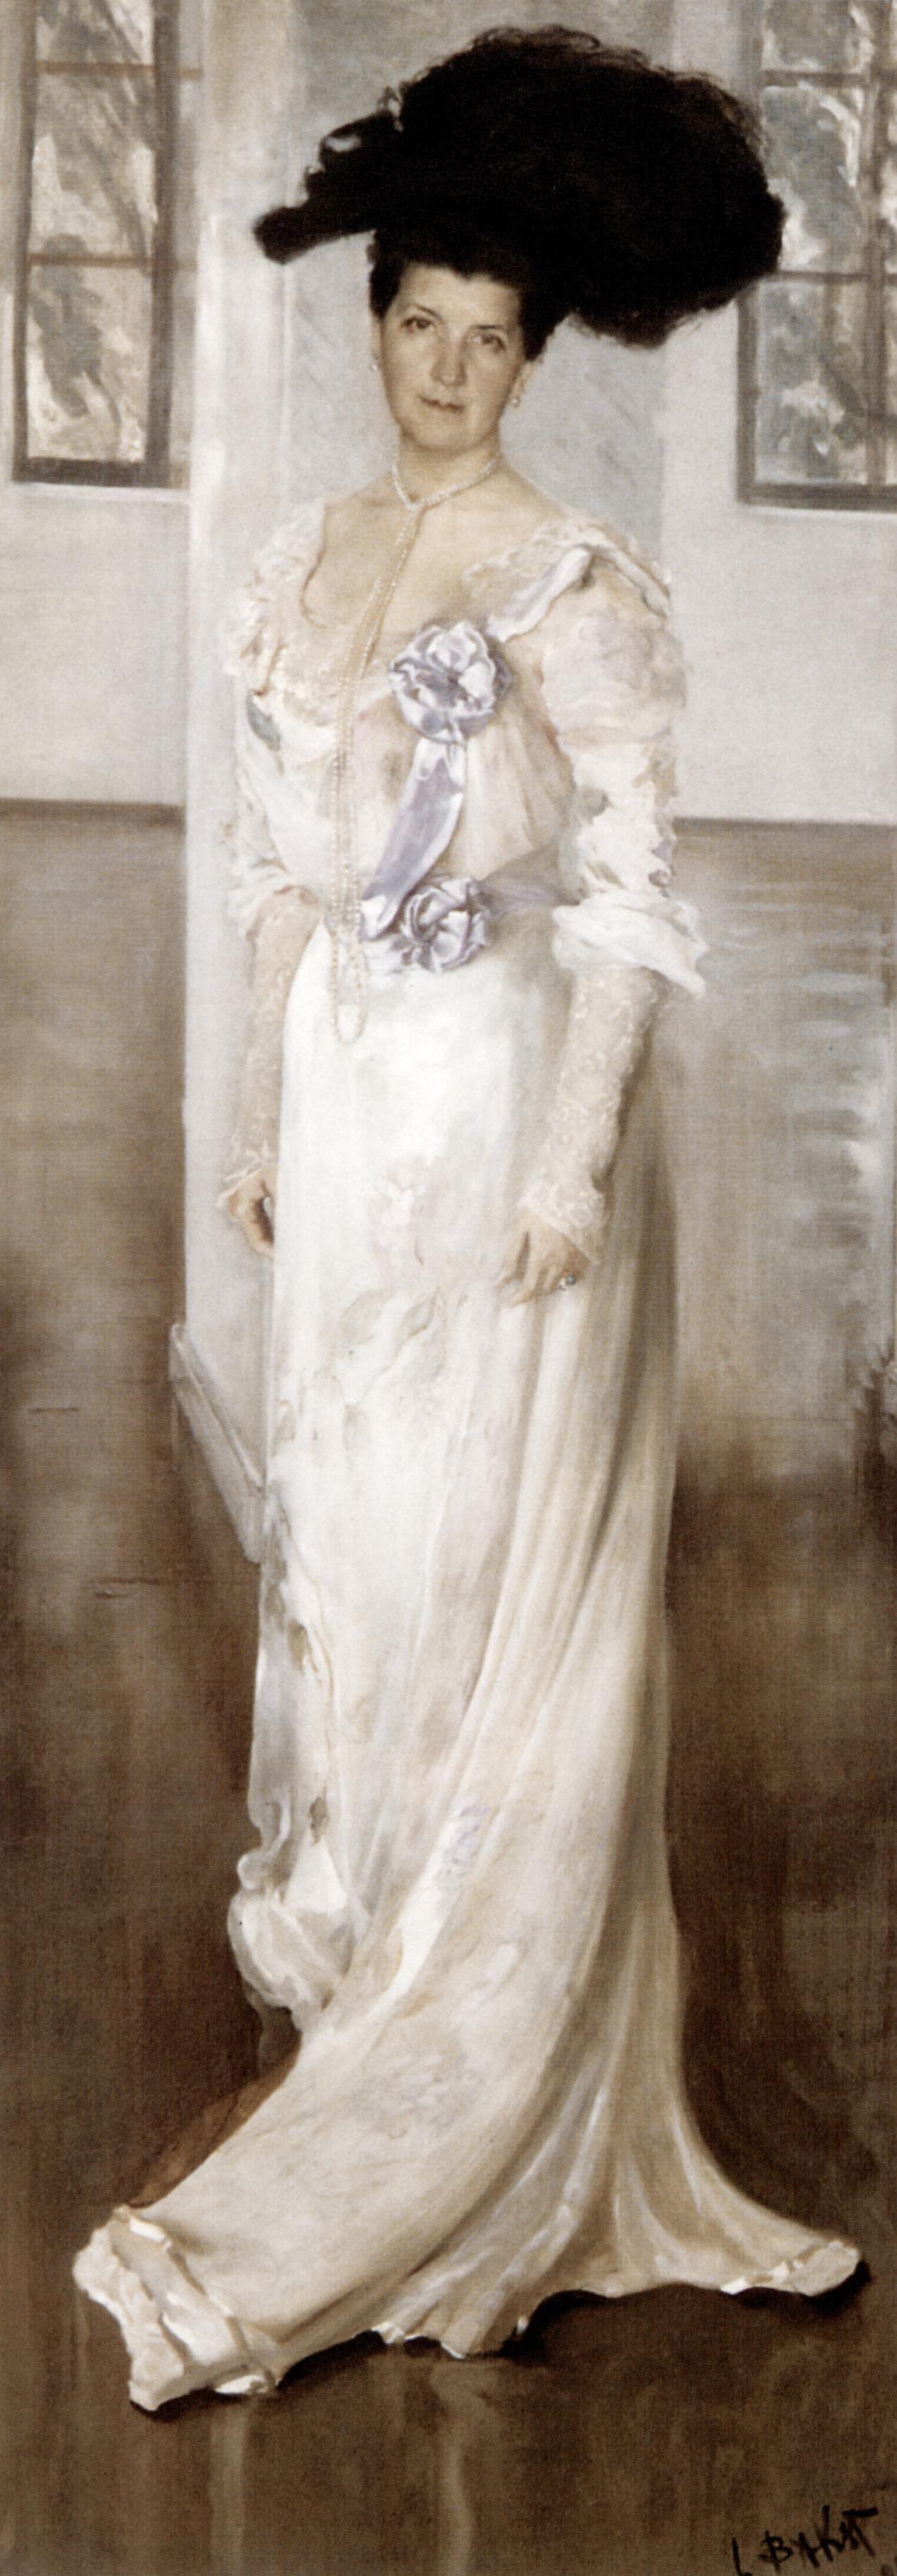 Lev (Leon) Bakst. Portrait of Countess Keller